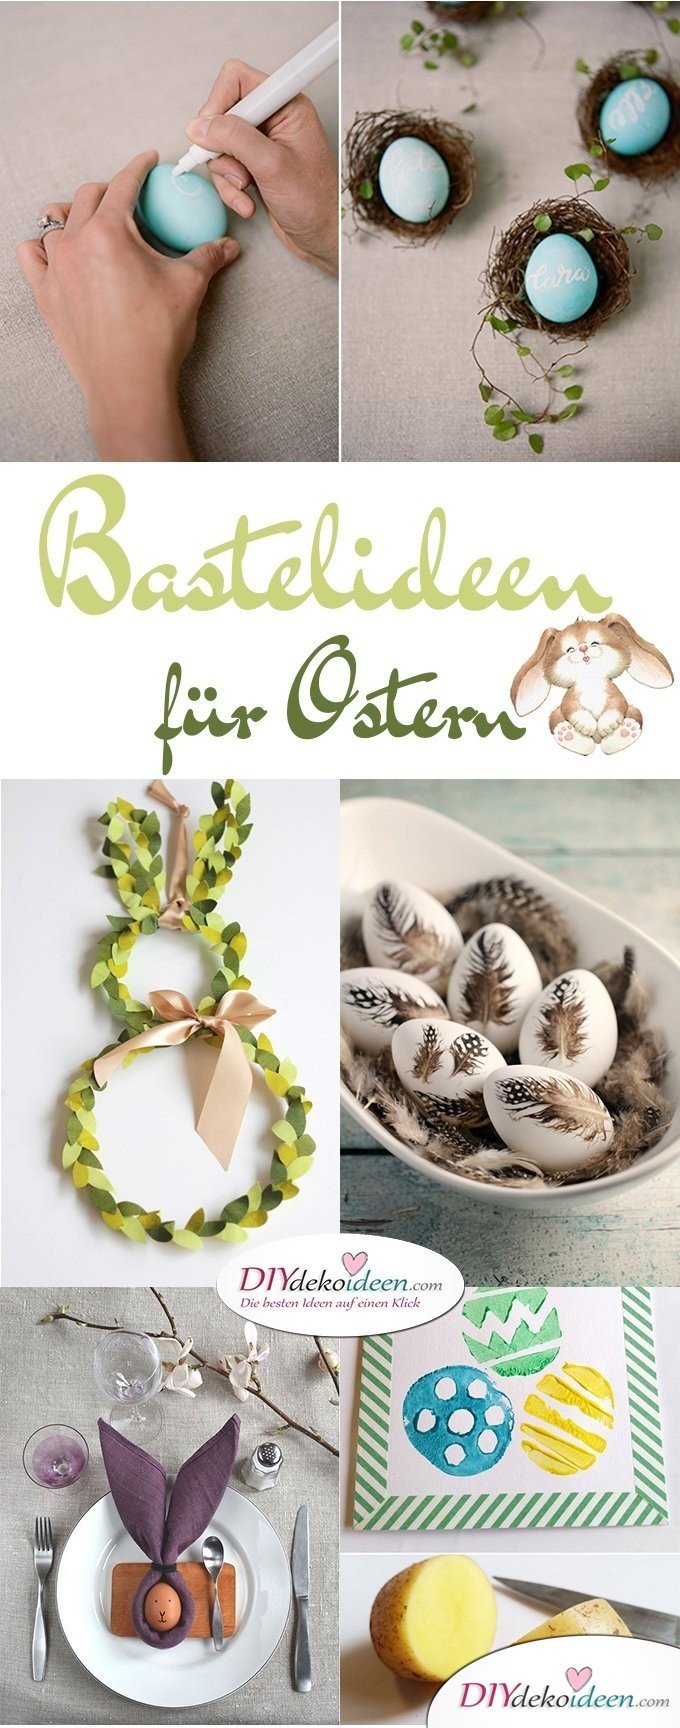 DIY Bastelideen für Ostern, Ostern basteln, Oster Bastelidee, Oster Deko, Osterdeko, Dekoideen Ostern, Bastelideen Ostern 